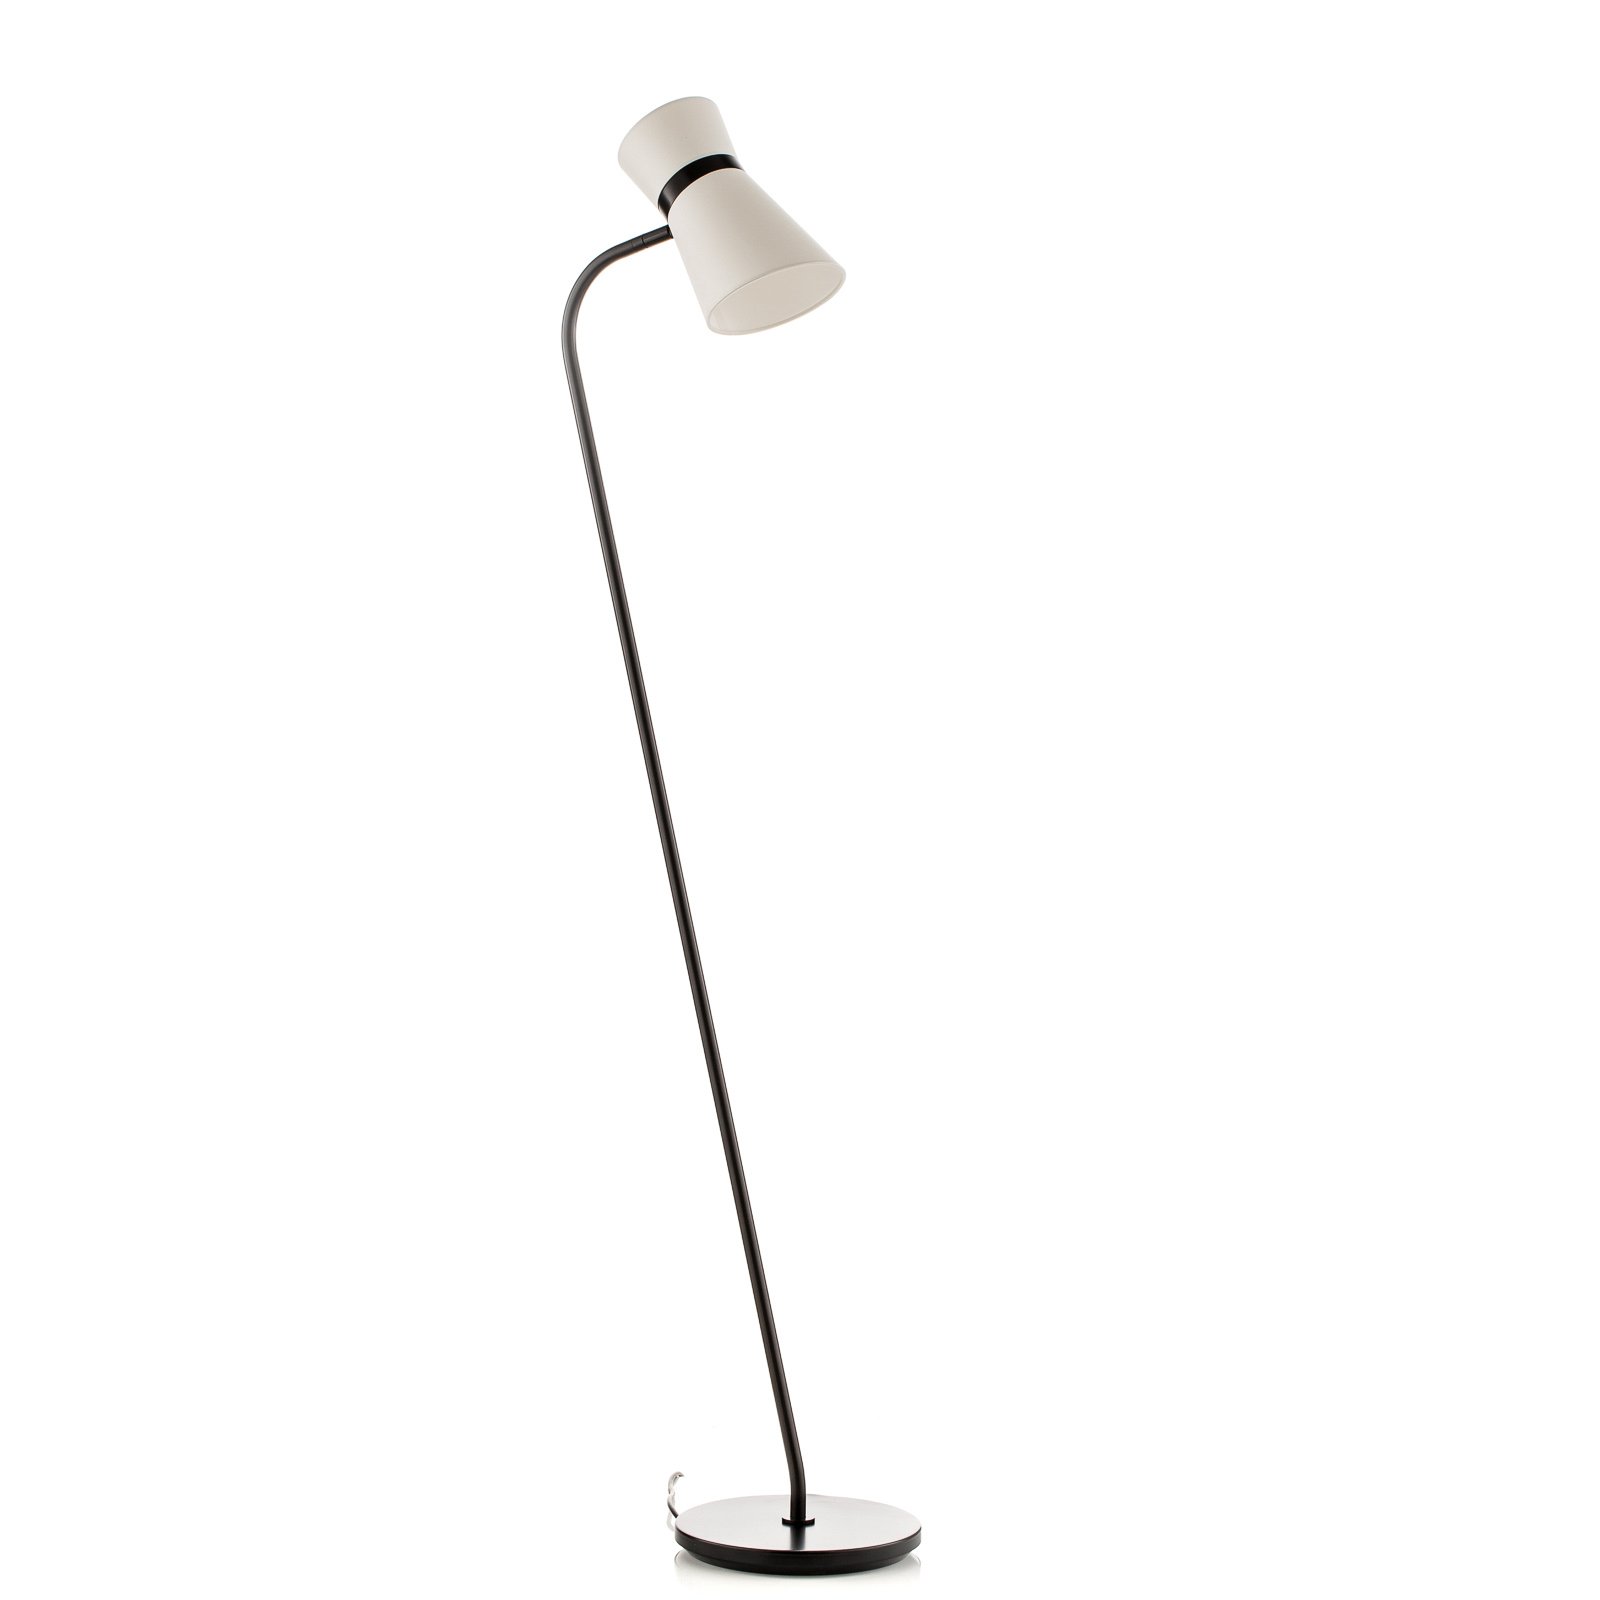 Baulmann 23.326.69-4204 podna svjetiljka u crno-bijeloj boji